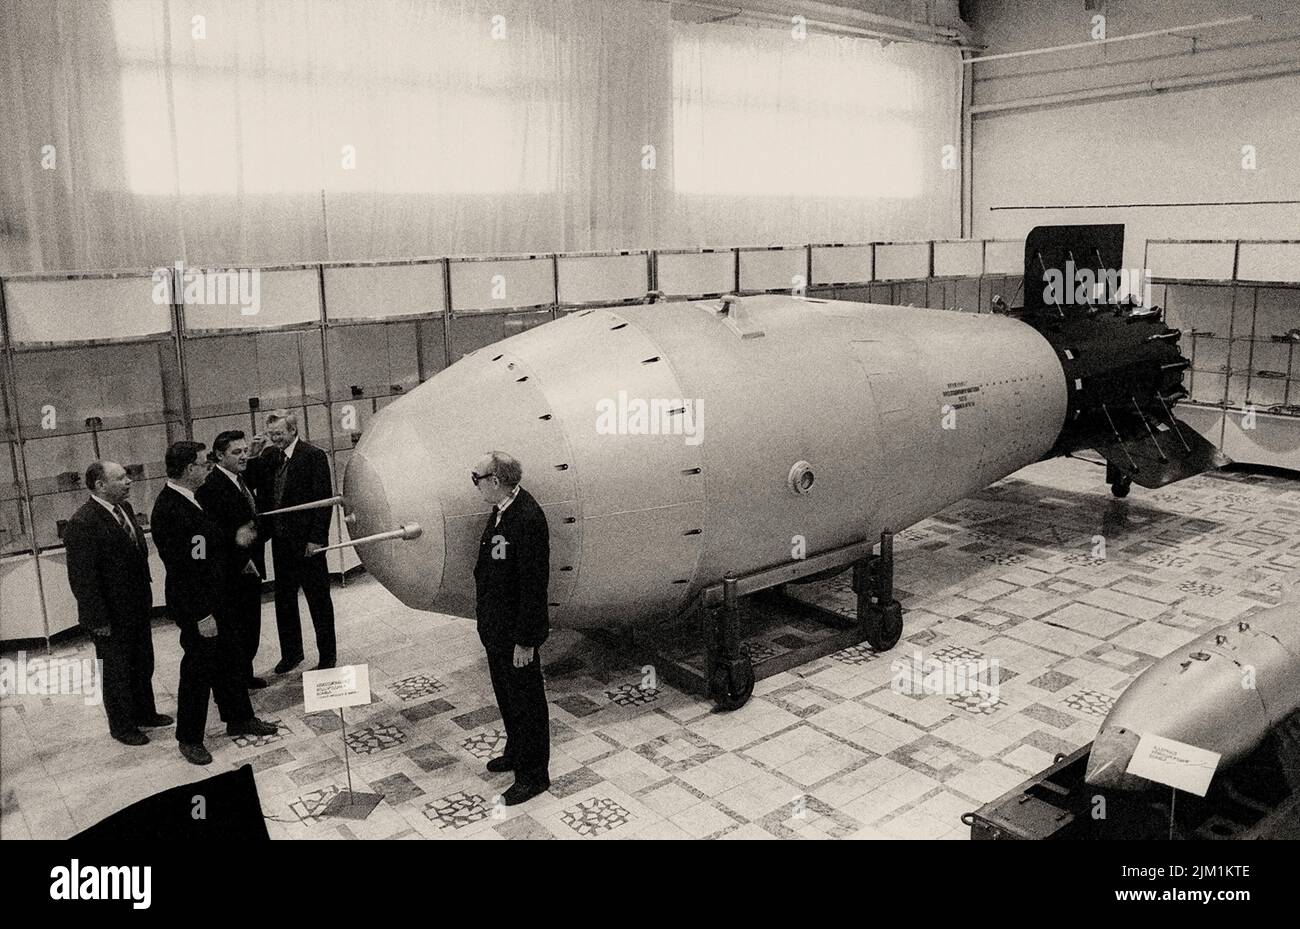 Есть ли водородная бомба. Ан602 термоядерная бомба — «царь-бомба» (58,6 мегатонн). Водородная бомба Сахарова 1953. Царь бомба 100 мегатонн.